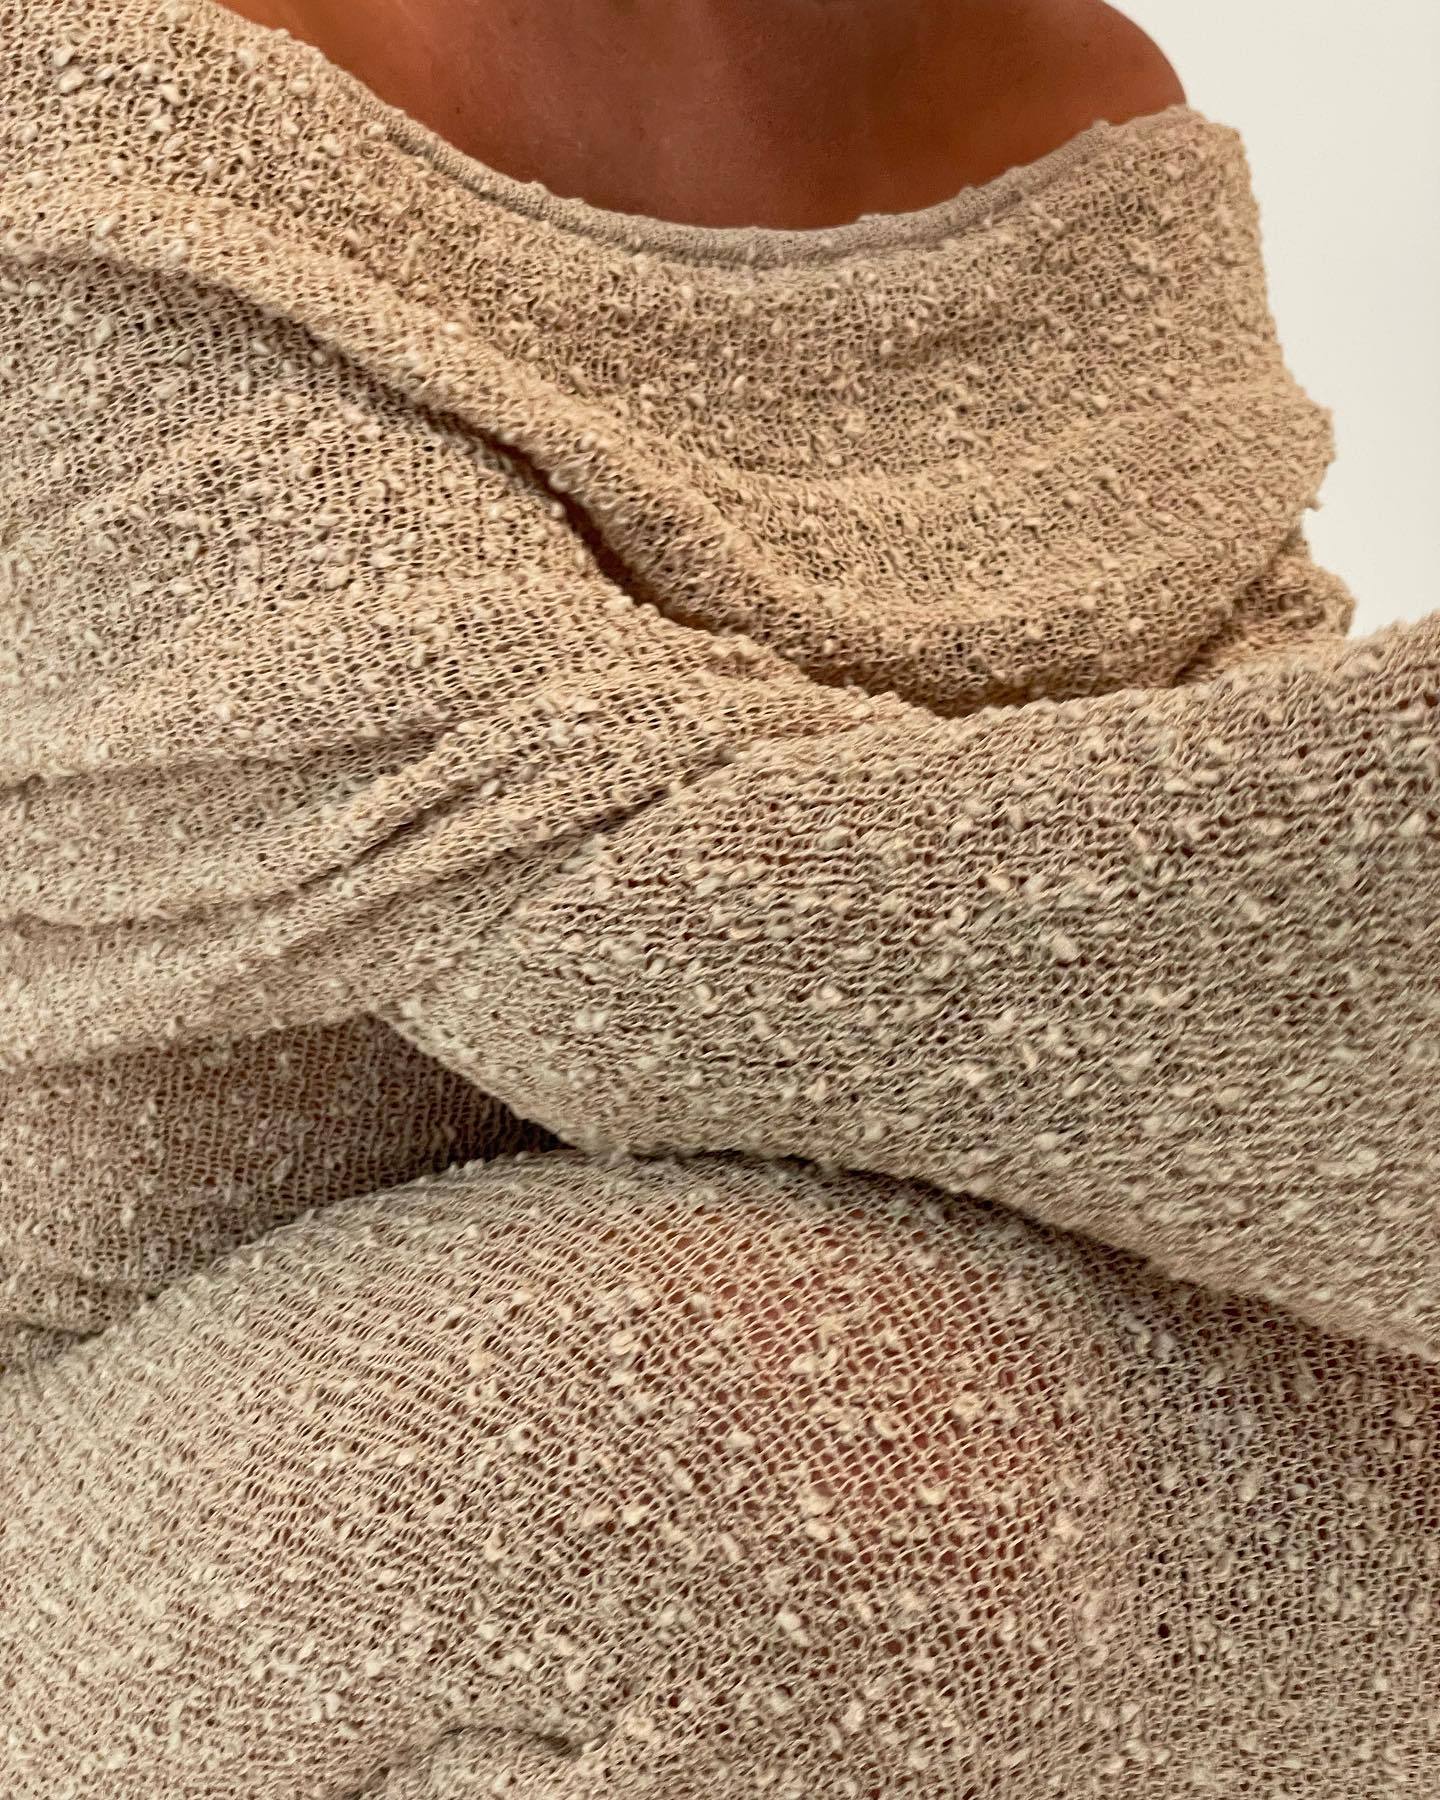 Robe longue sexy tricotée ajourée et découpée à col nu